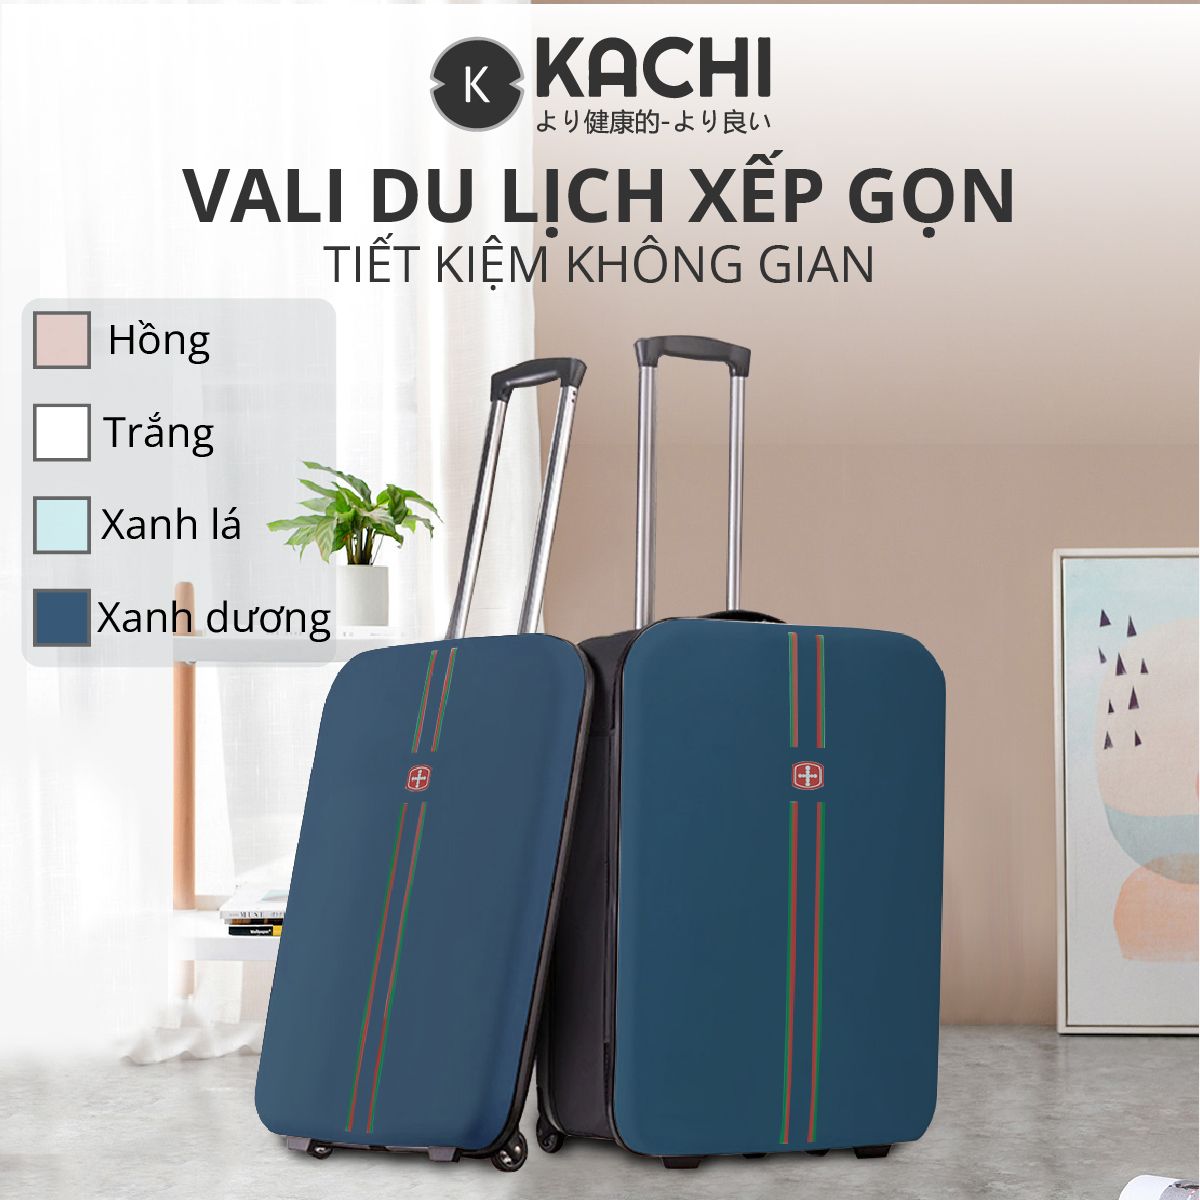  Vali du lịch xếp gọn tiết kiệm không gian Kachi MK355 size 20